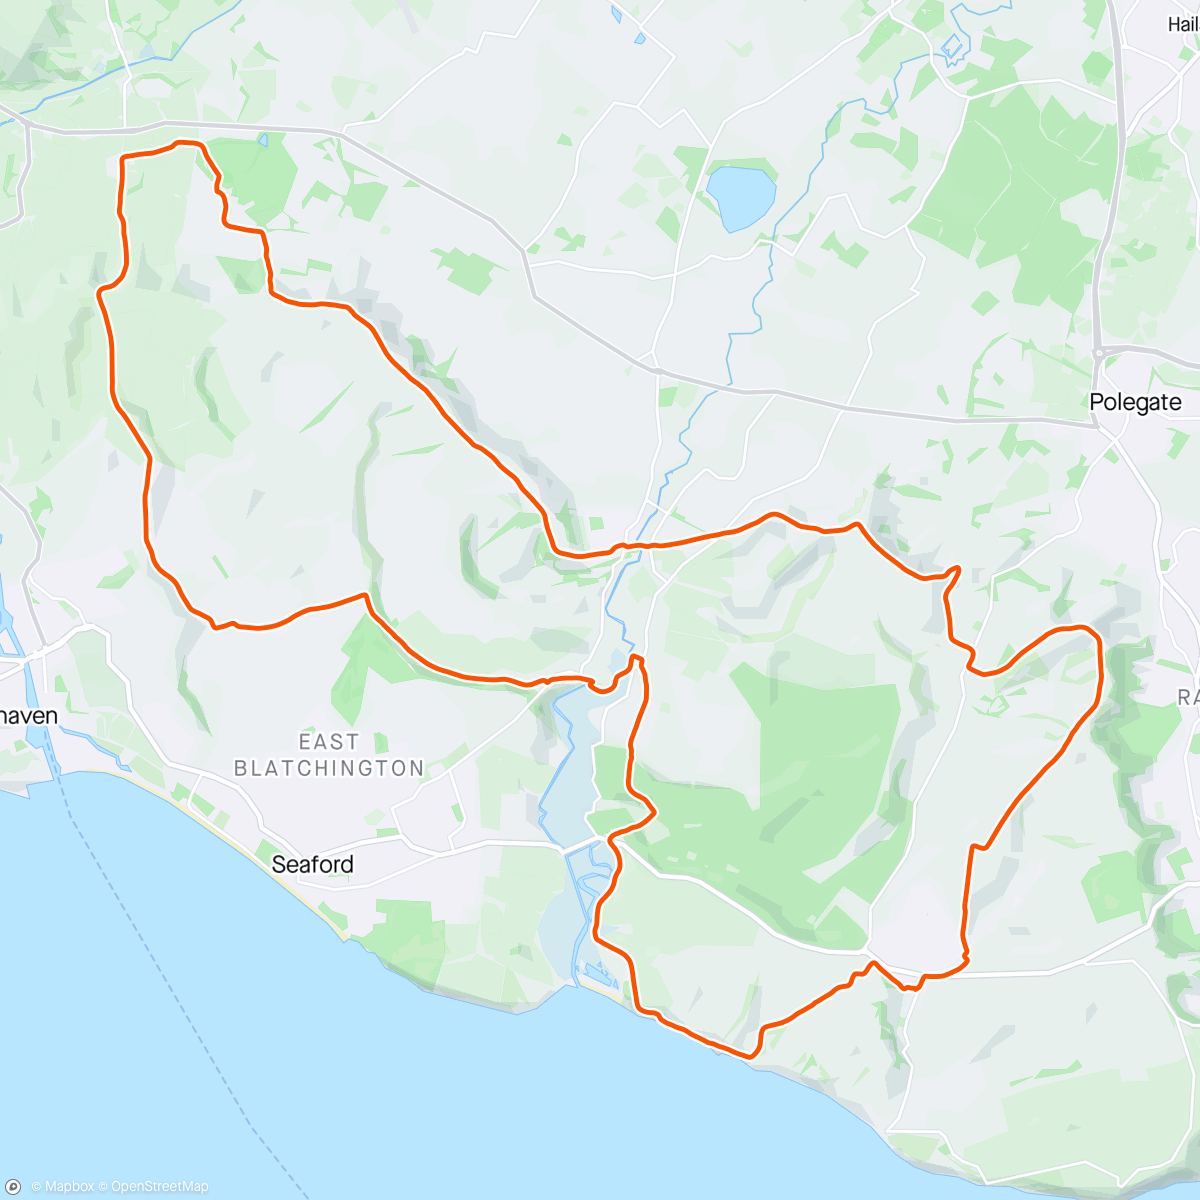 「LDWA Sussex Marathon」活動的地圖